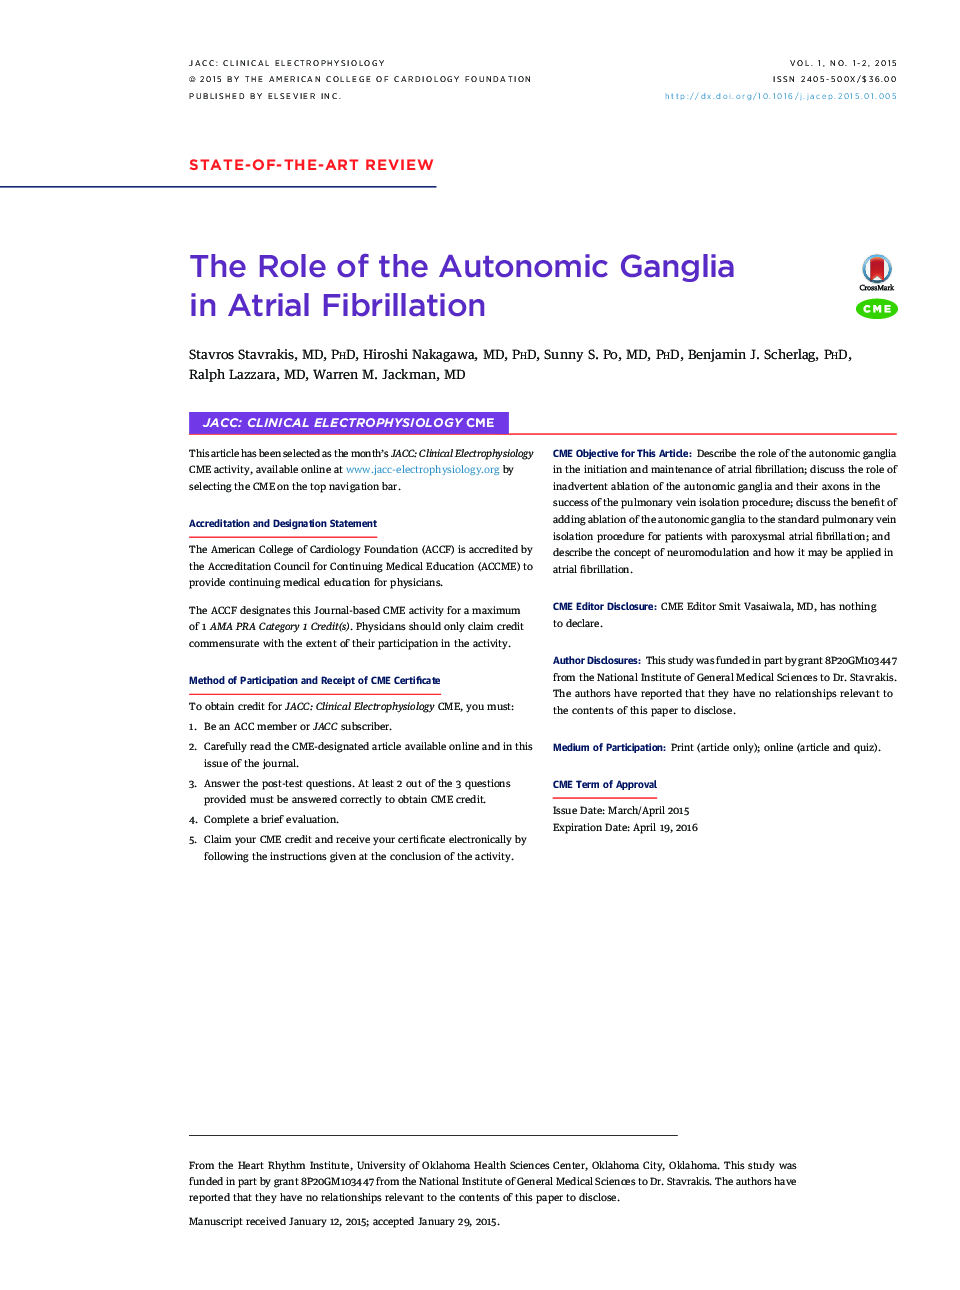 The Role of the Autonomic Ganglia in Atrial Fibrillation 